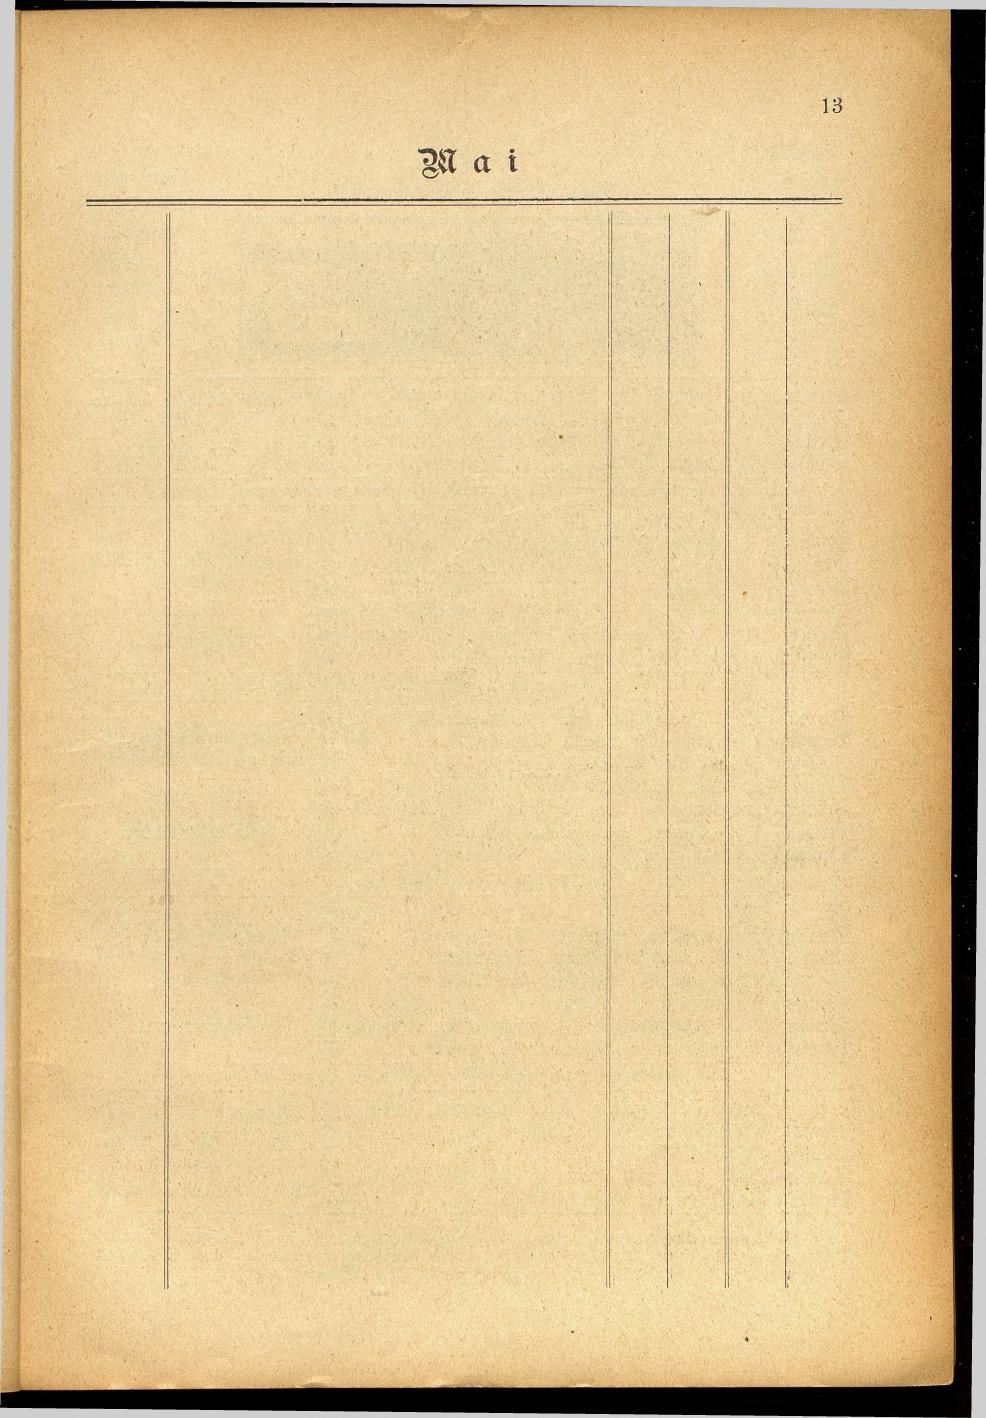 Illustrierter Braunauer-Kalender für das Jahr 1904 - Seite 17